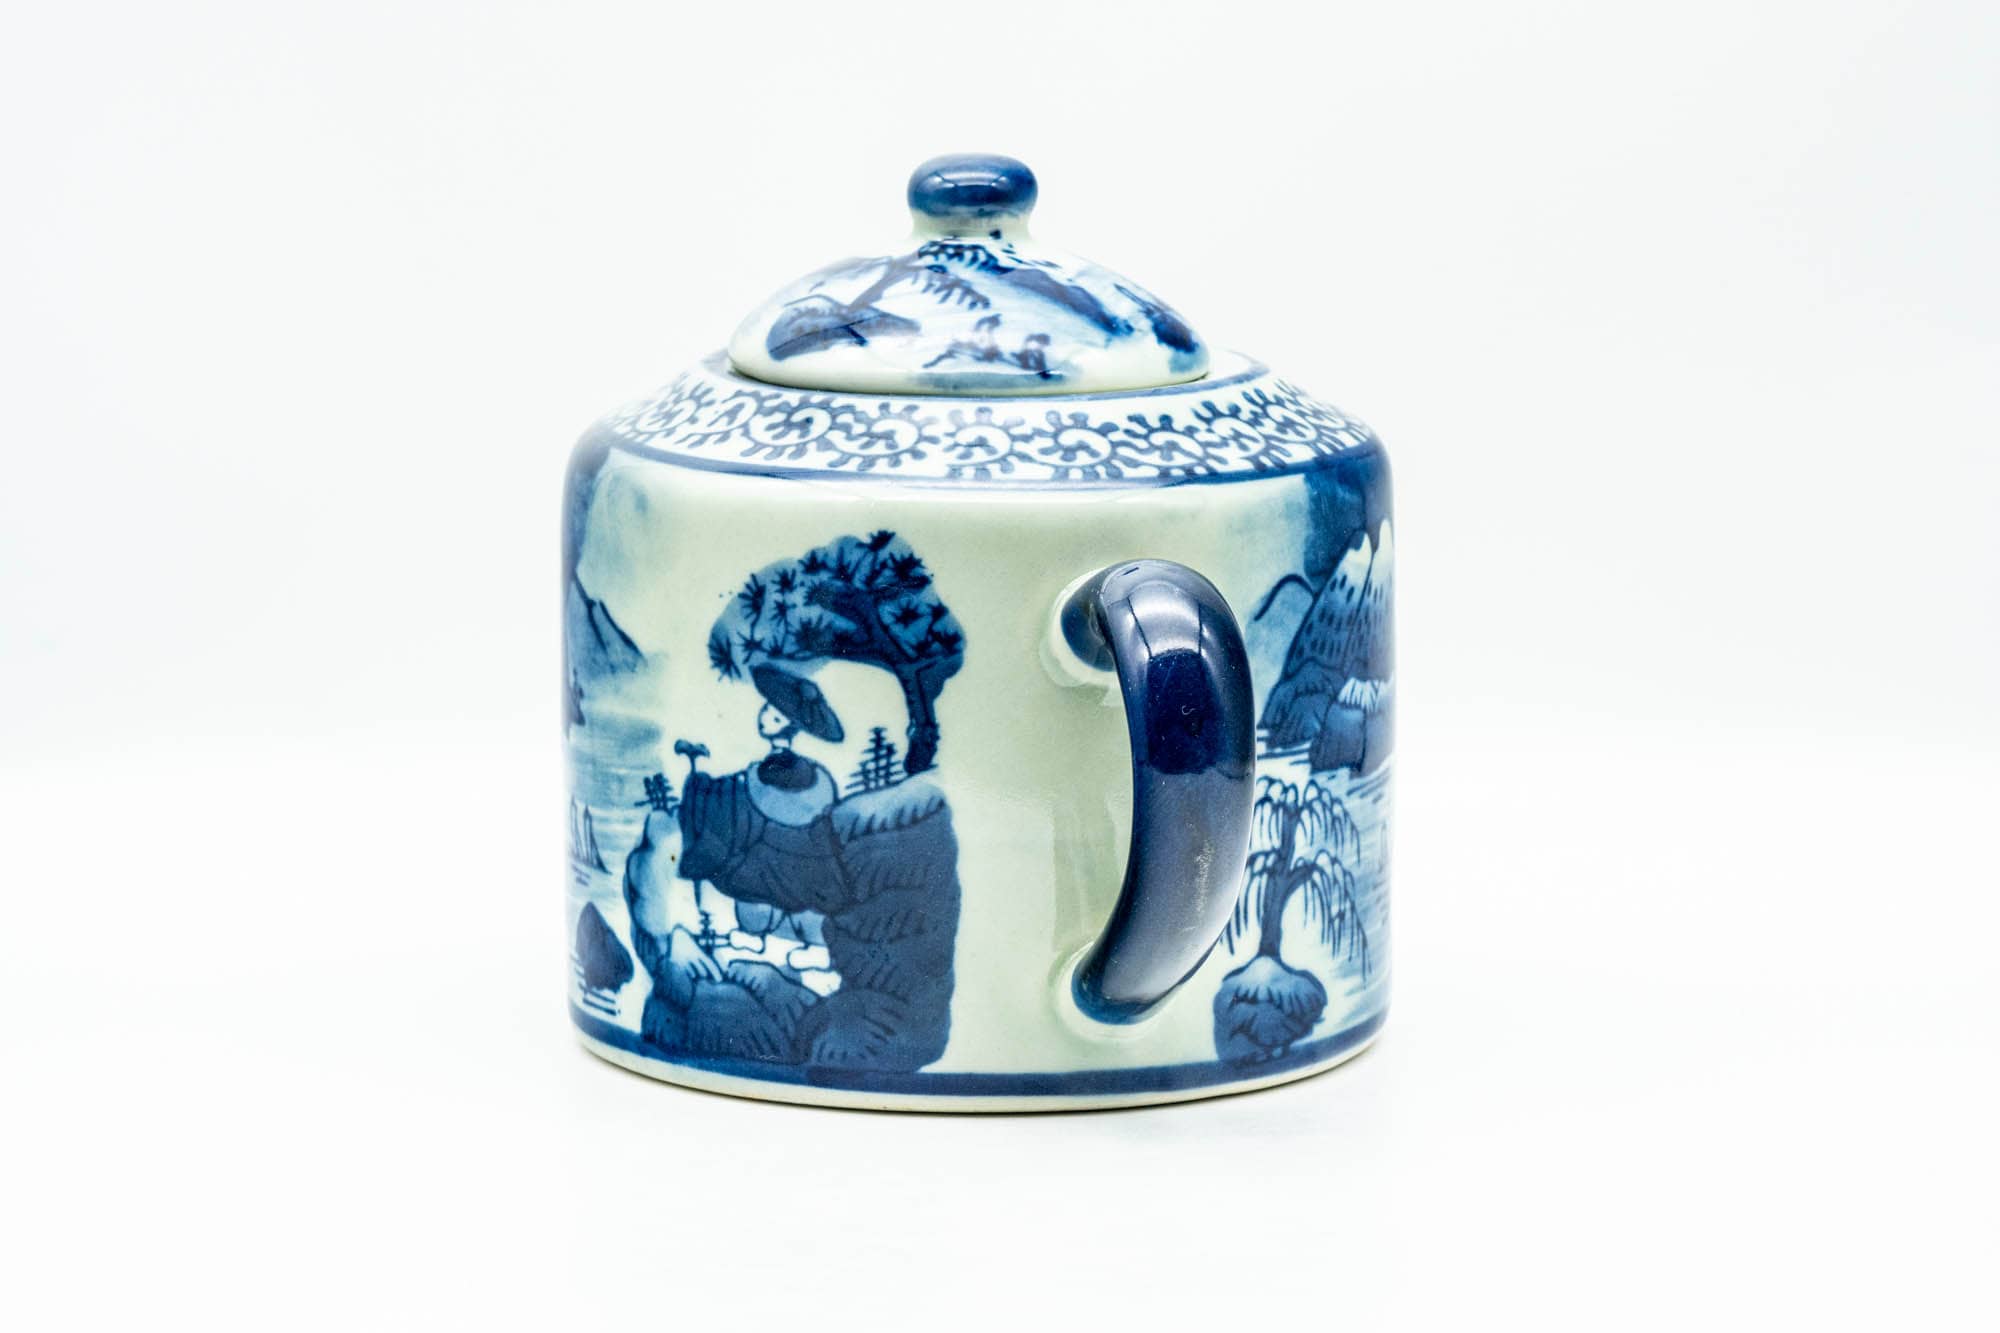 Japanese Kyusu - Blue Geometric Mountainous Motif Porcelain Do-ake Ushirode Teapot - 550ml